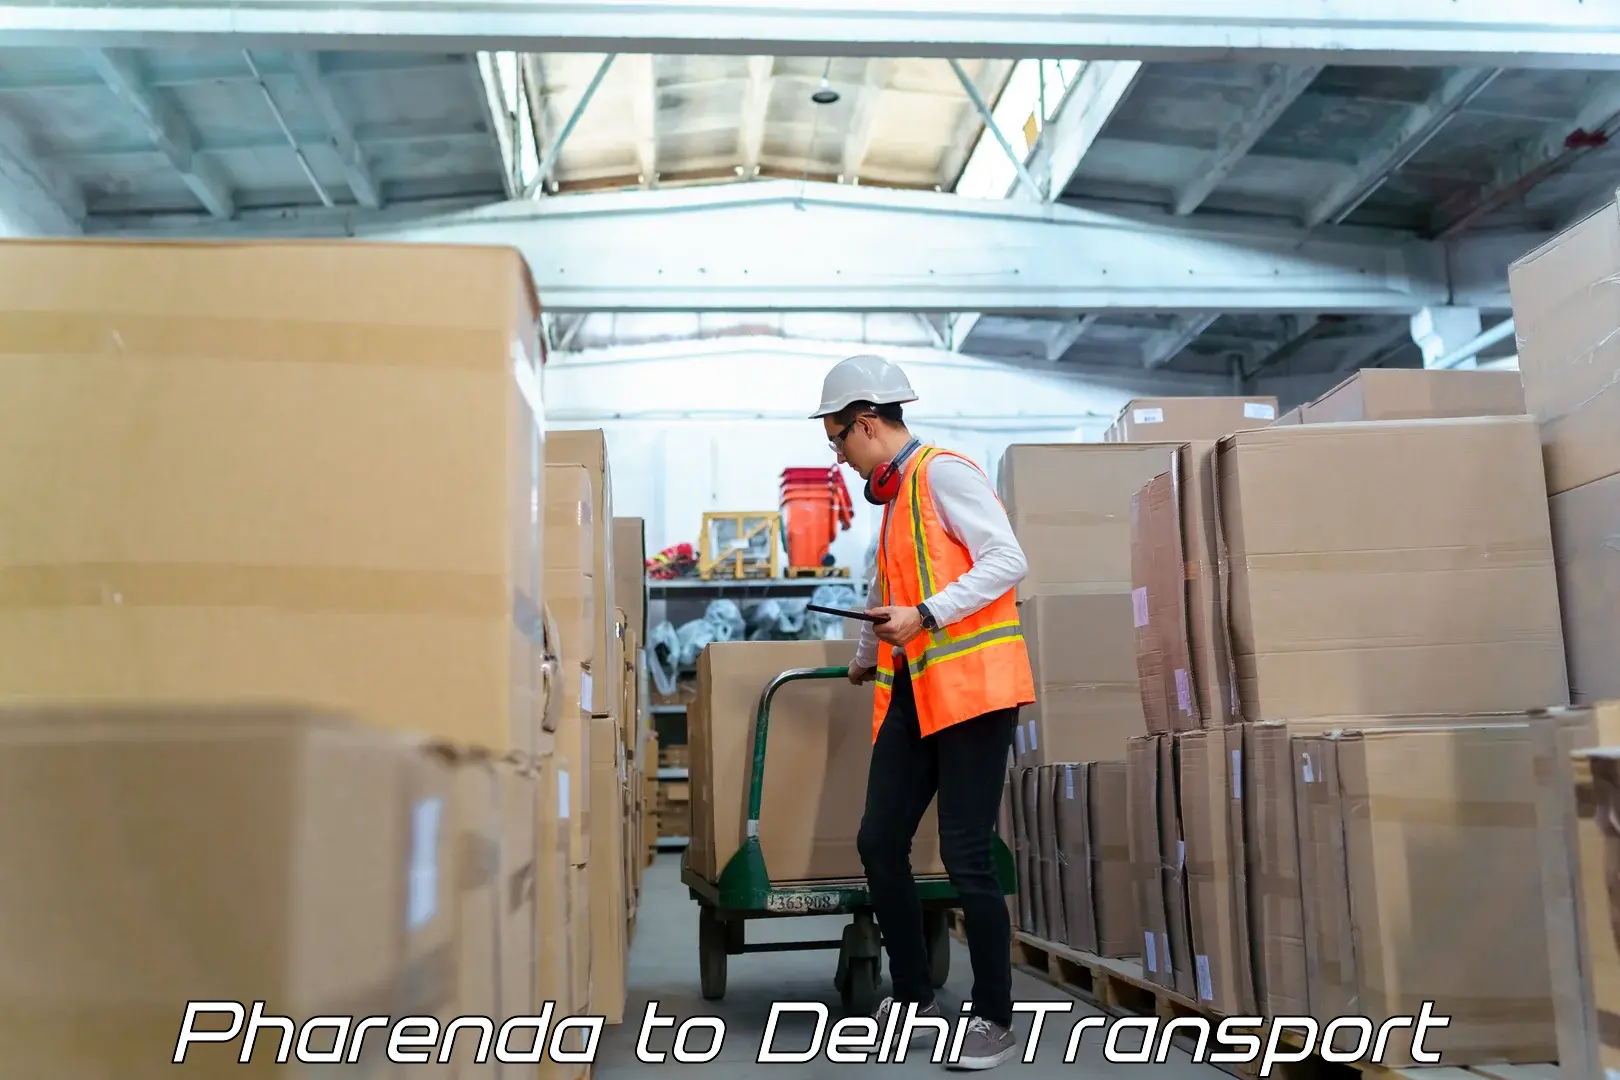 Road transport online services Pharenda to Delhi